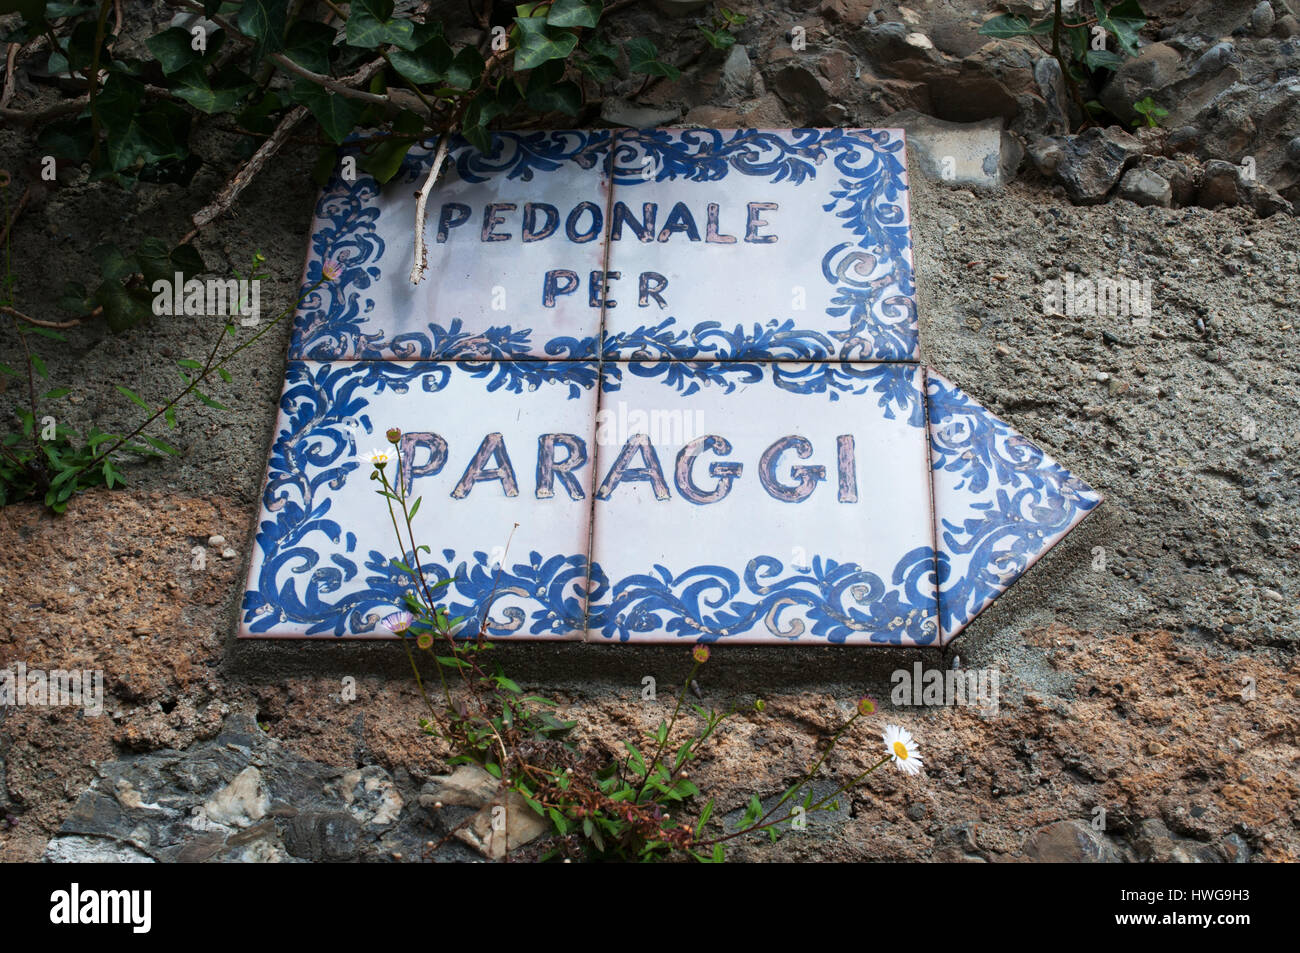 Portofino : signe de céramique du sentier pédestre sur la falaise de Portofino à Paraggi, village de pêche italien célèbre pour son eau bleue cristalline Banque D'Images